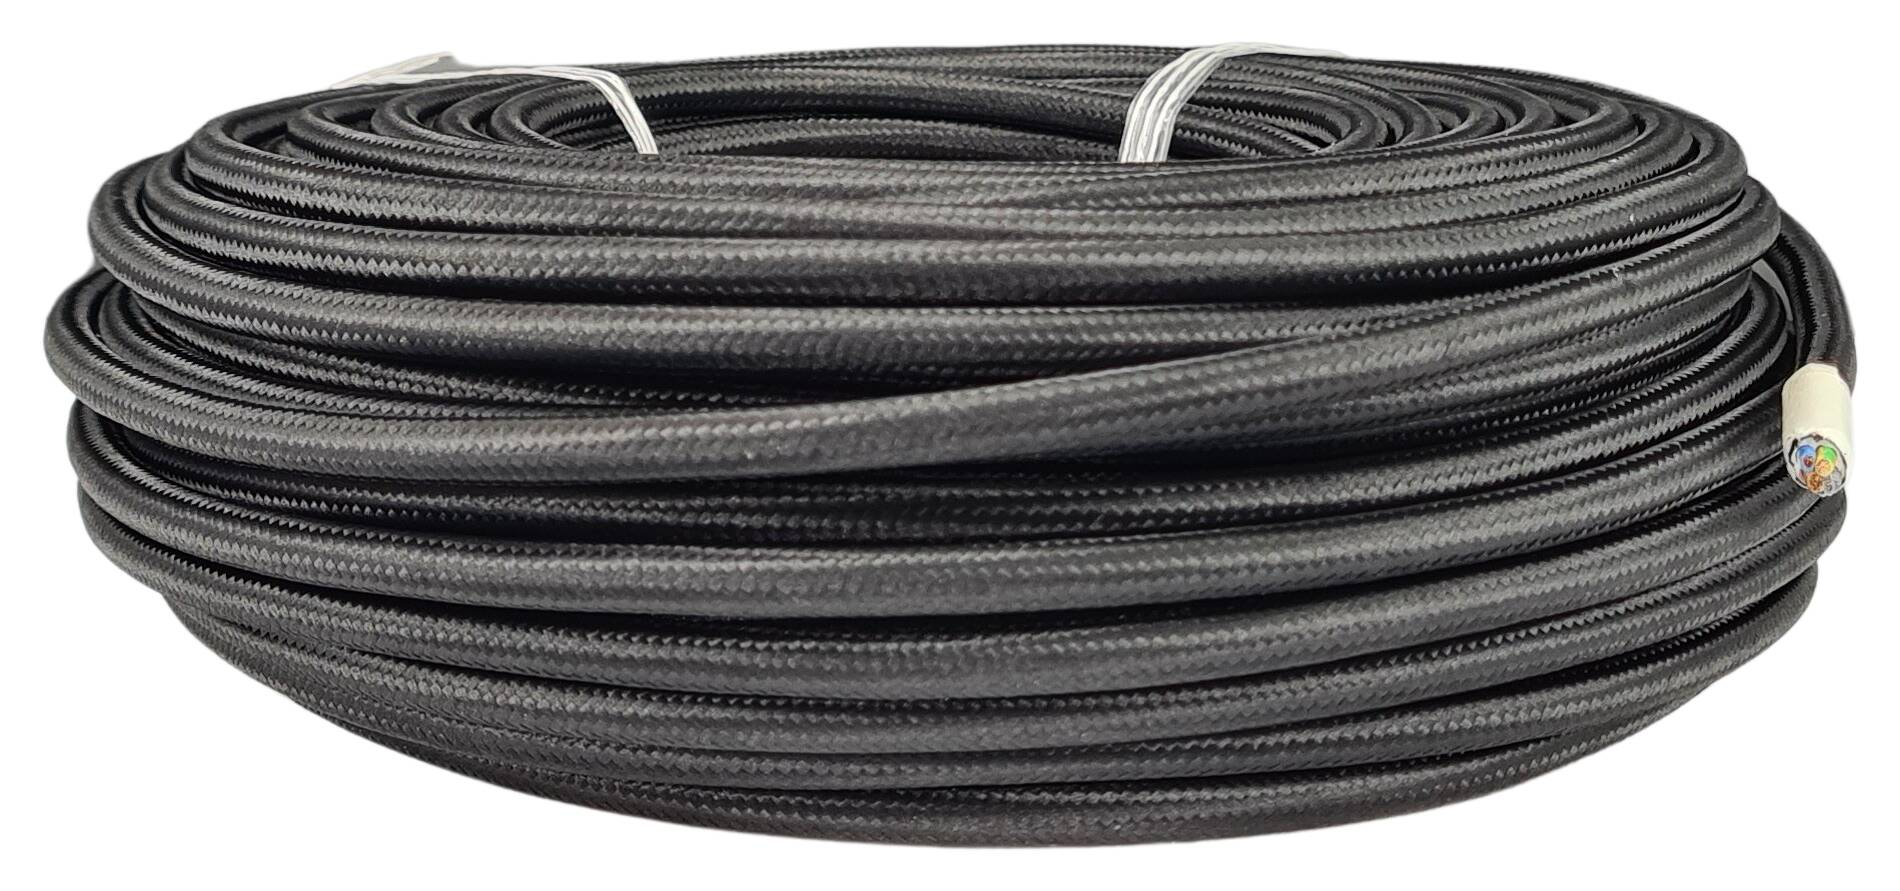 Kabel m. Stahlseil 3G 1,00 HO3VV-F AD = 6,4 mm PVC  textilummantelt RAL 9005 schwarz